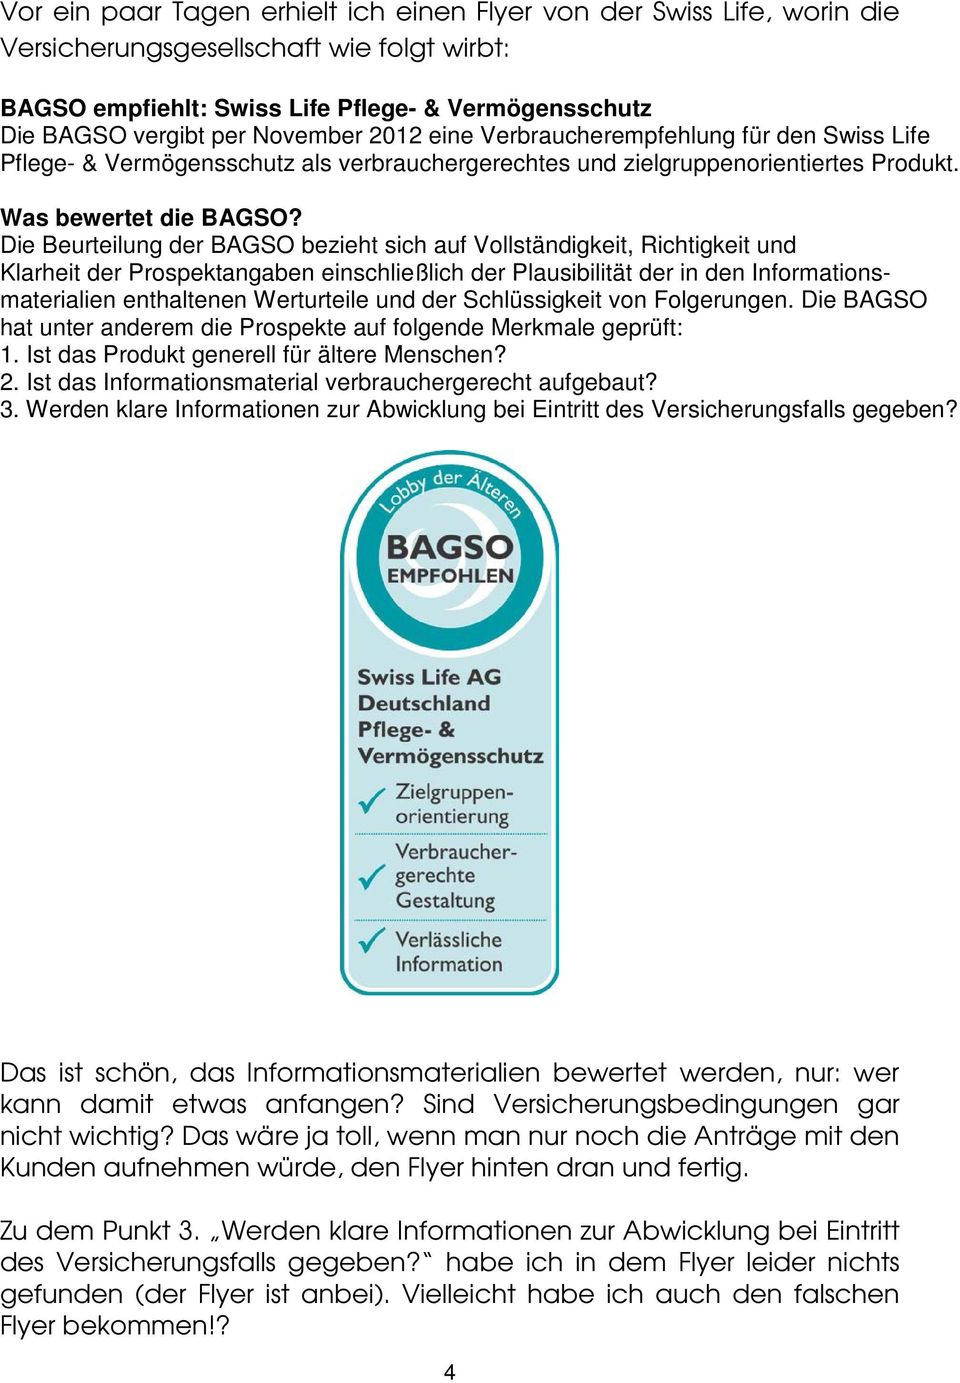 Die Beurteilung der BAGSO bezieht sich auf Vollständigkeit, Richtigkeit und Klarheit der Prospektangaben einschließlich der Plausibilität der in den Informationsmaterialien enthaltenen Werturteile